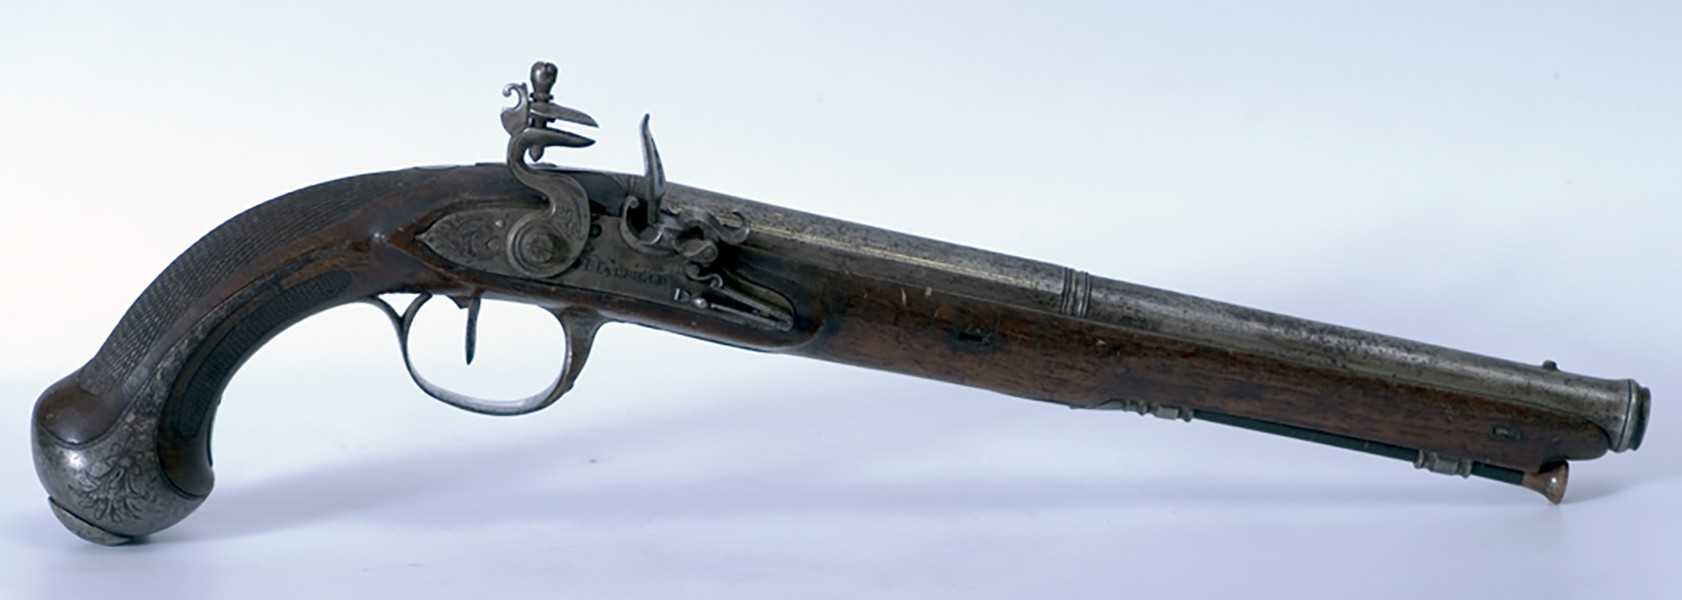 Пистолет дуэльный Англия. XVIII век  Дерево, металл, резьба, гравировка